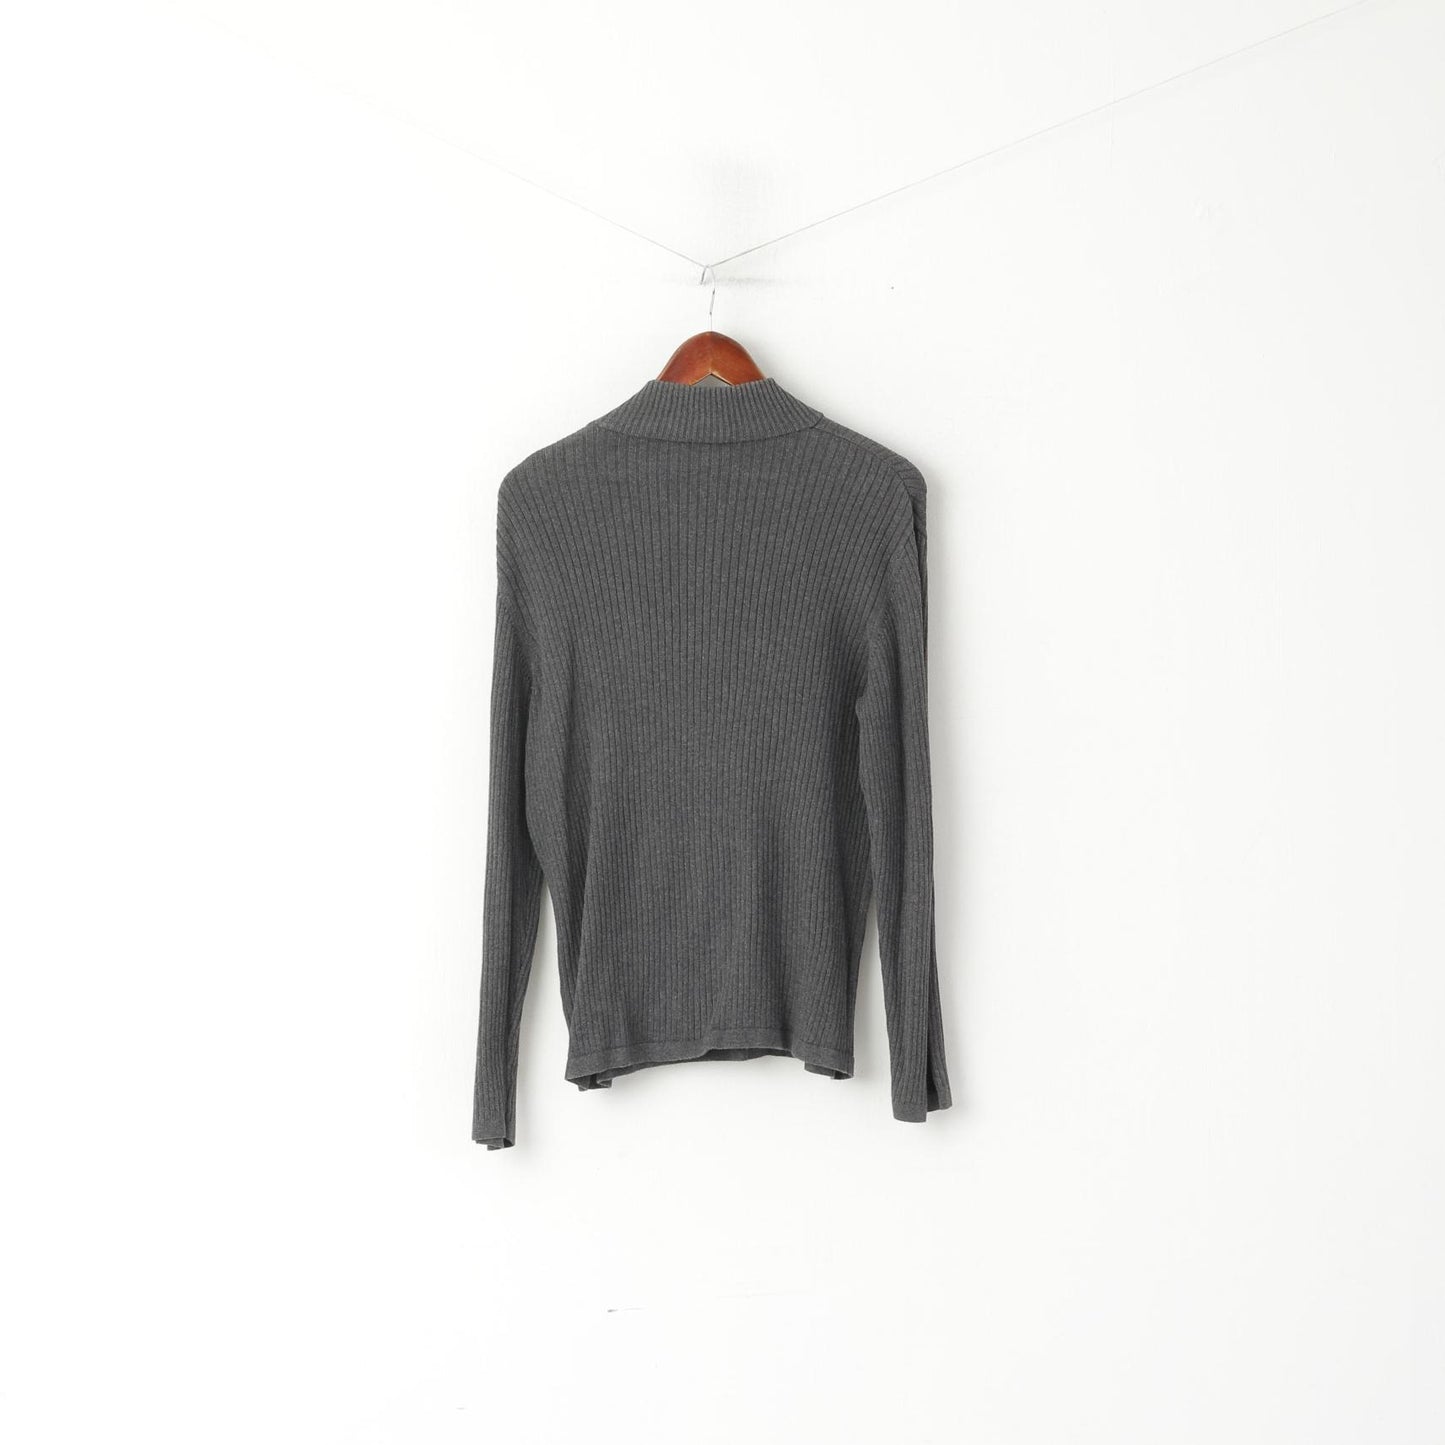 Maglione da uomo DKNY Jeans maglione con collo a zip slim fit in cotone elasticizzato a righe grigie